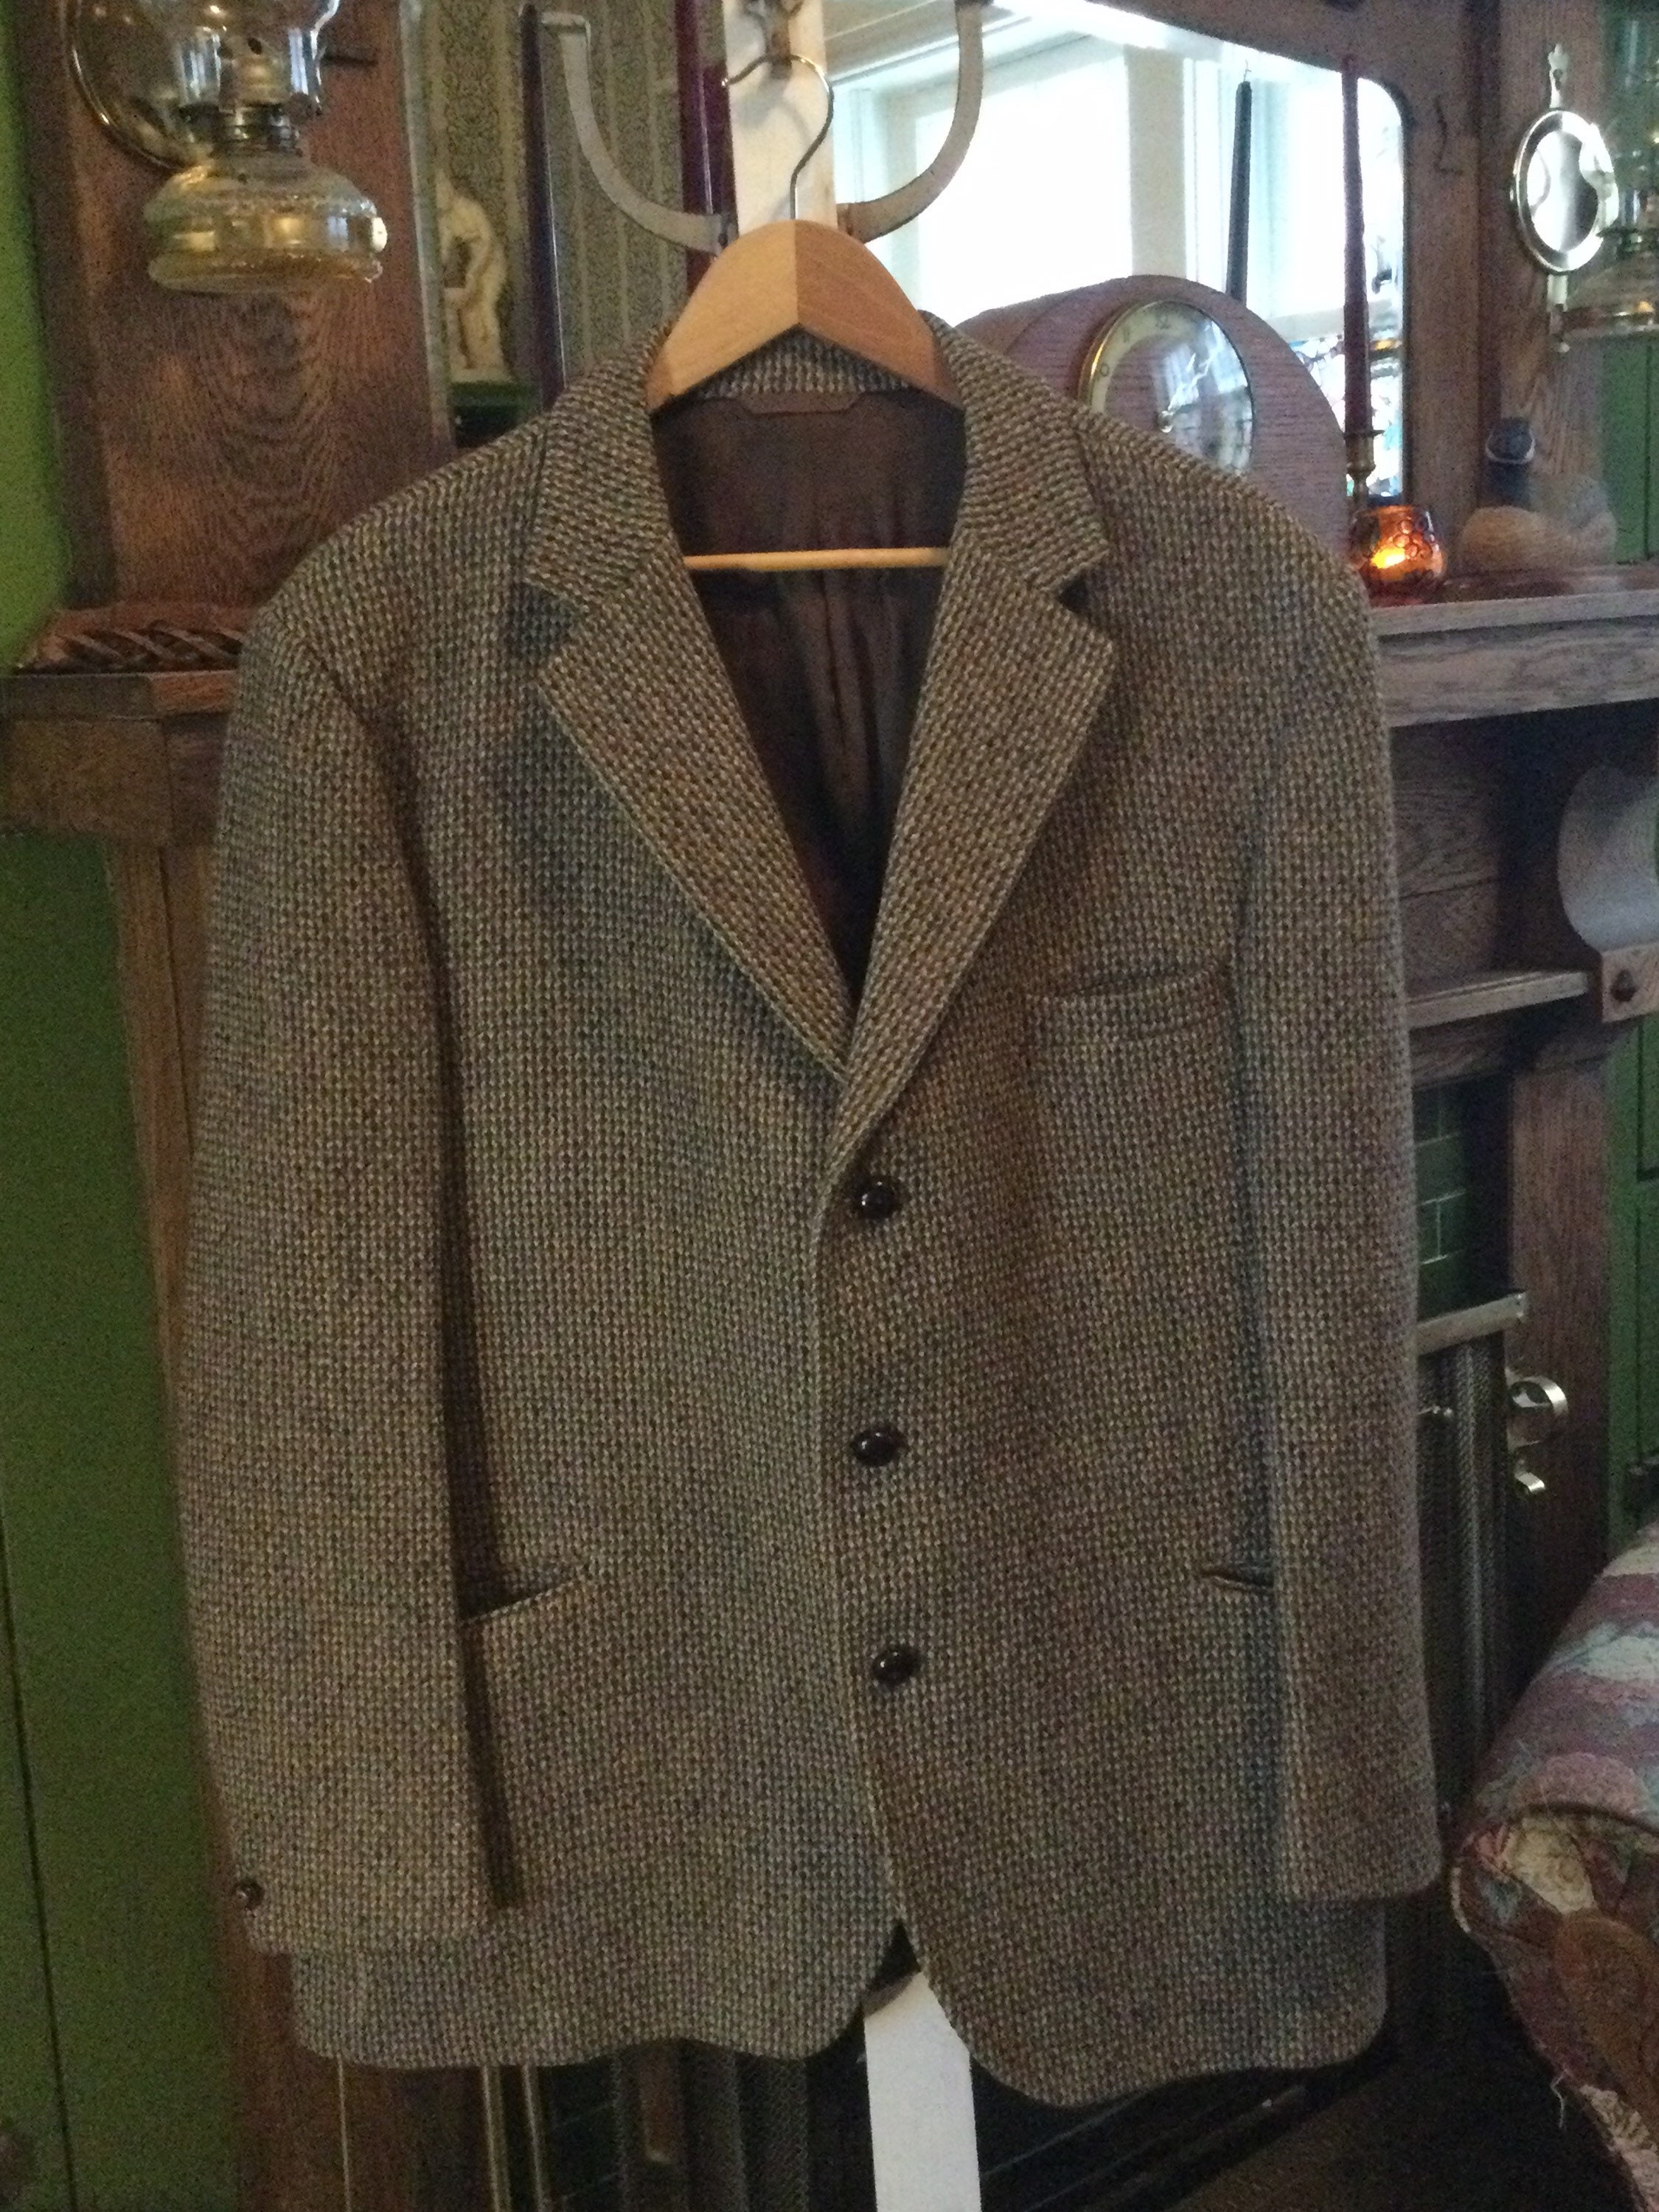 Vintage Harris Tweed jacket (B061), sports coat in earth tones